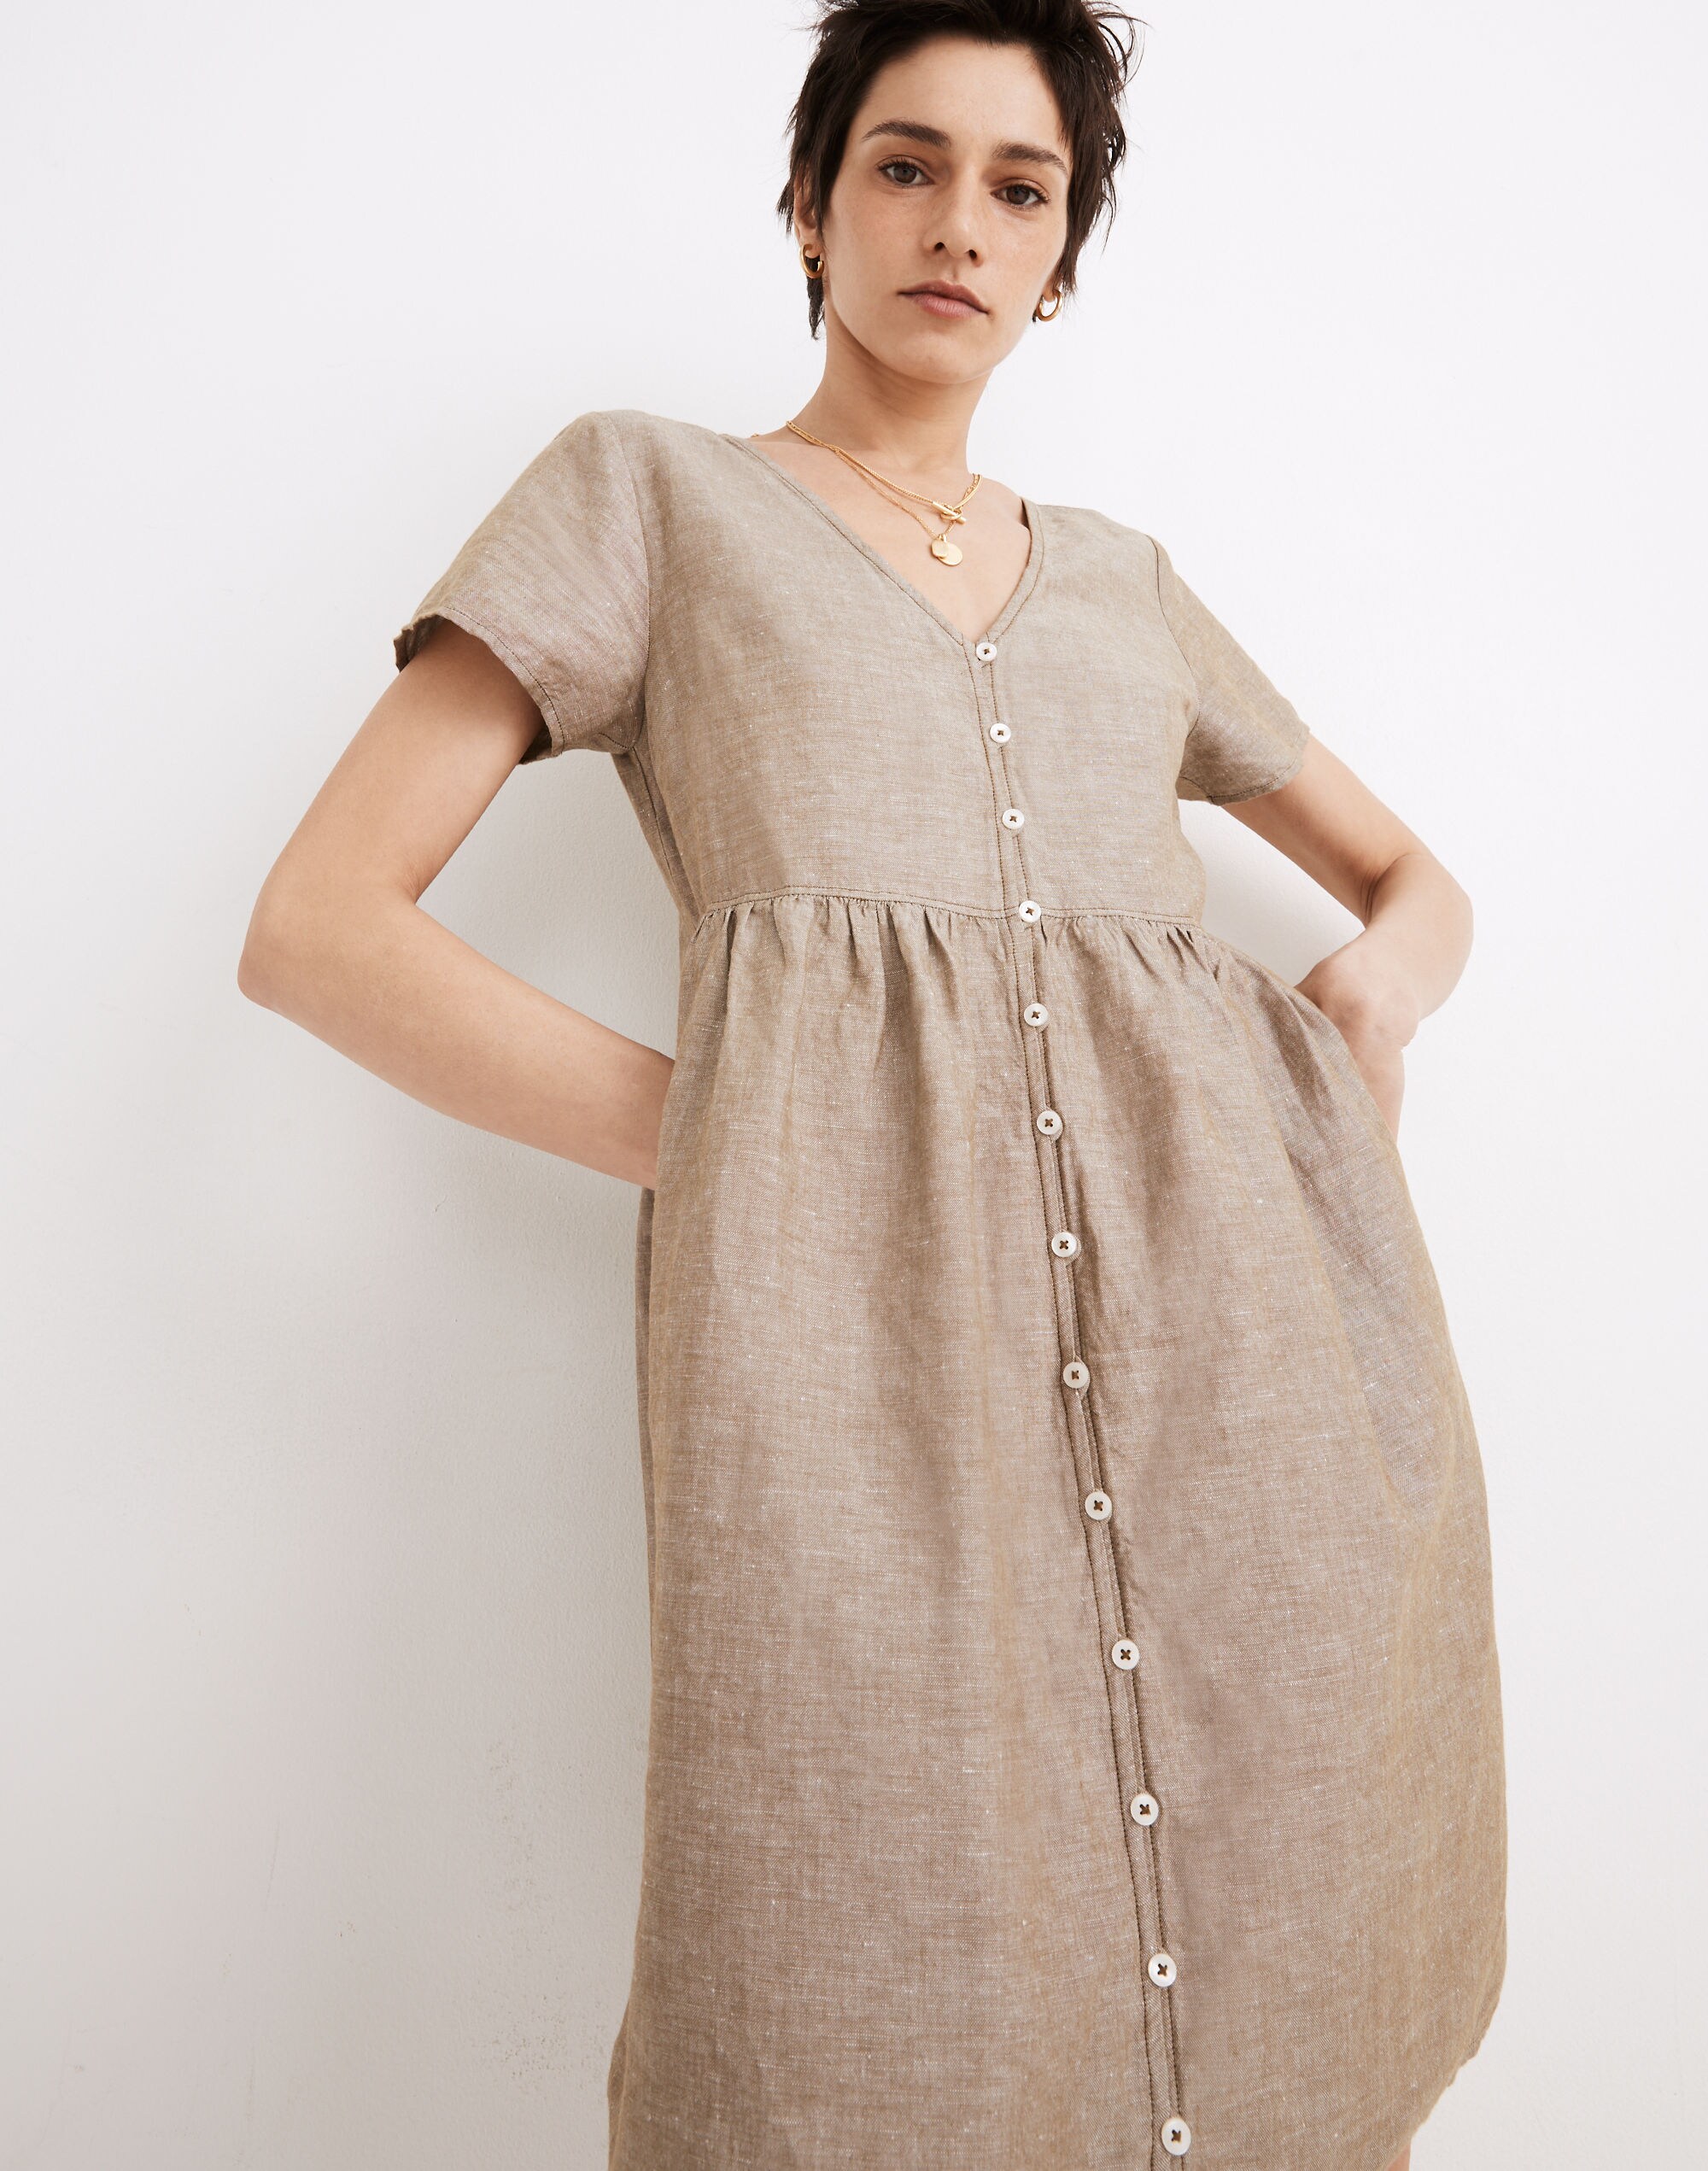 madewell linen dress